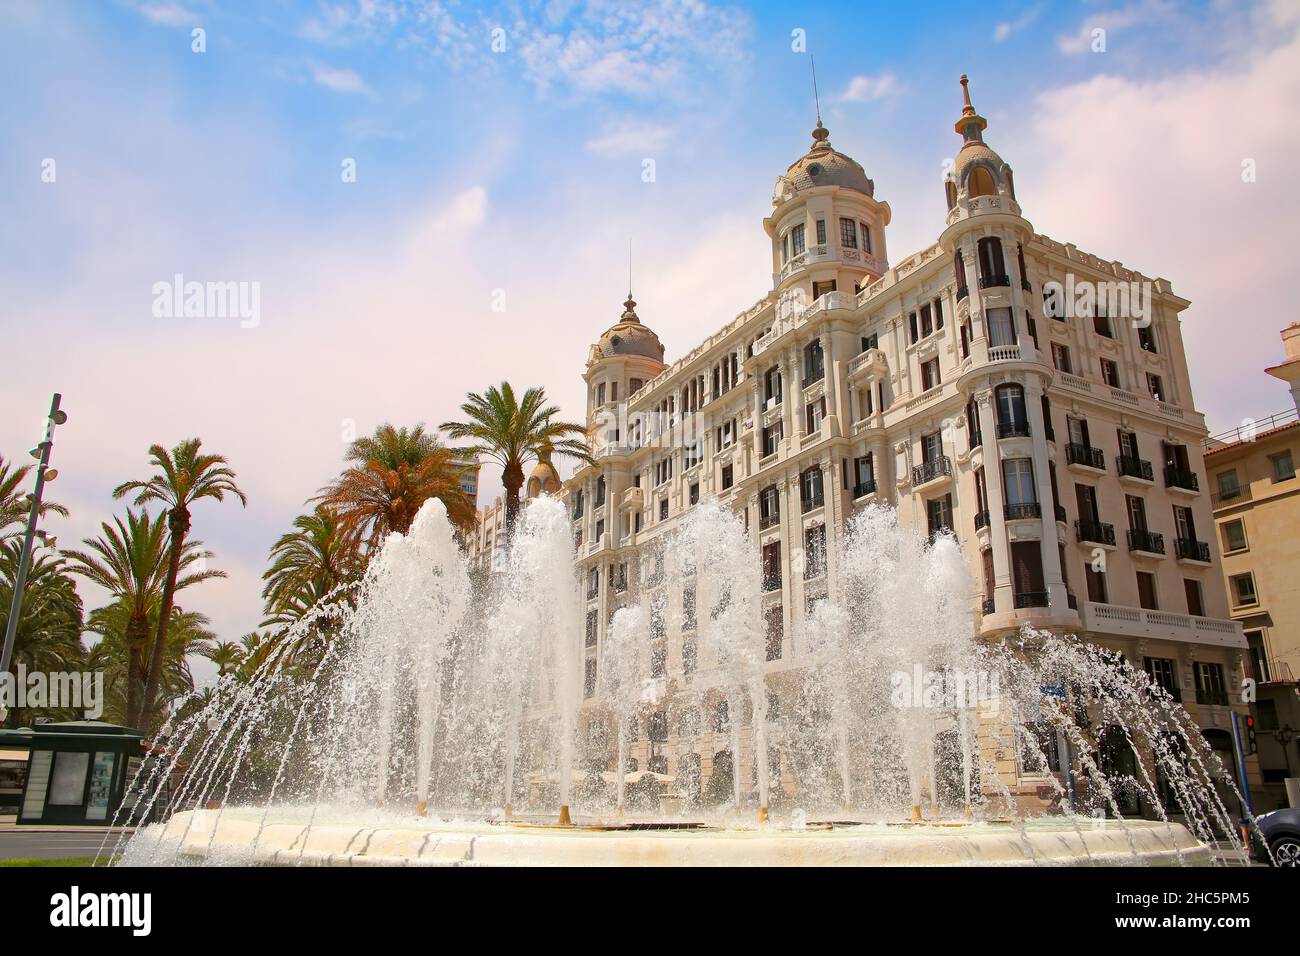 Wunderschöner Springbrunnen entlang der Uferpromenade der Stadt mit historischen traditionellen Gebäuden. Explanada de Espana mit Palmen, Alicante, Spanien. Stockfoto